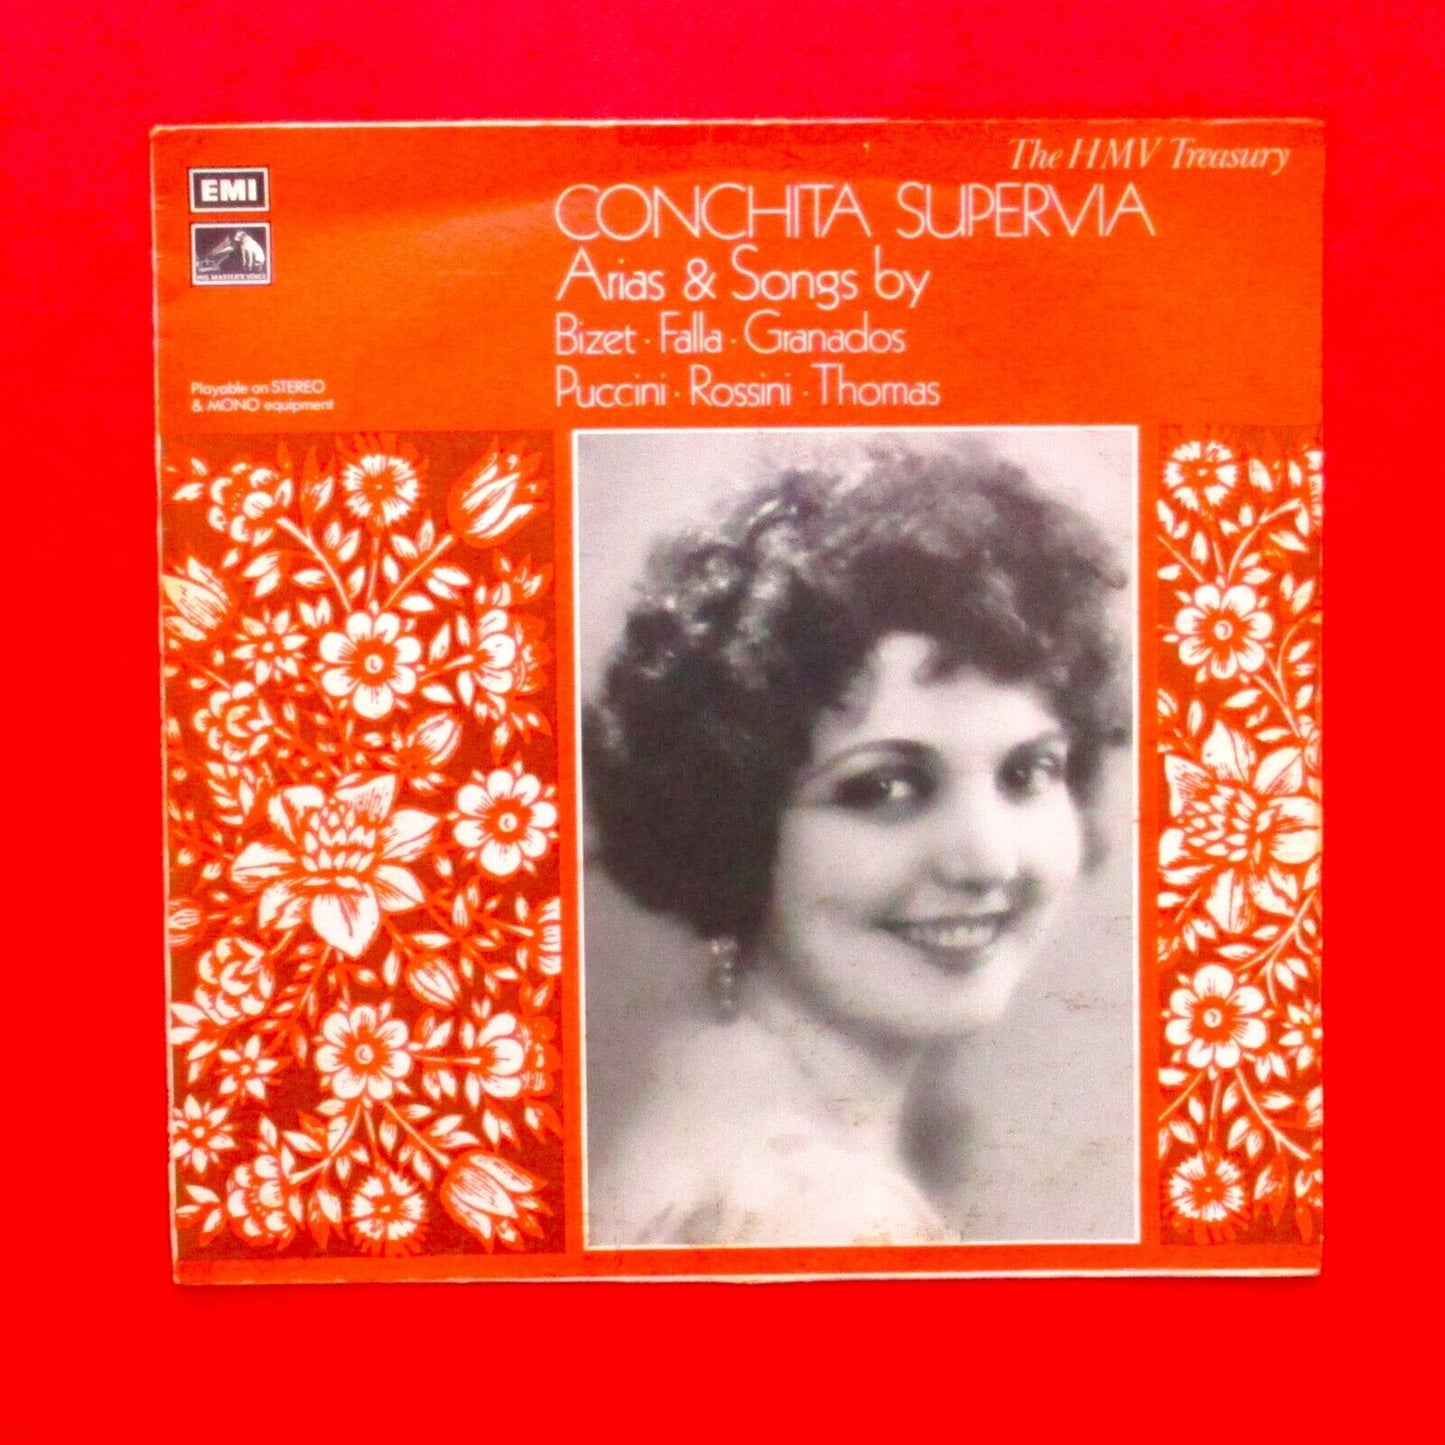 Conchita Supervia ‎Arias & Songs Vinyl Album LP EMI Treasury UK 1974